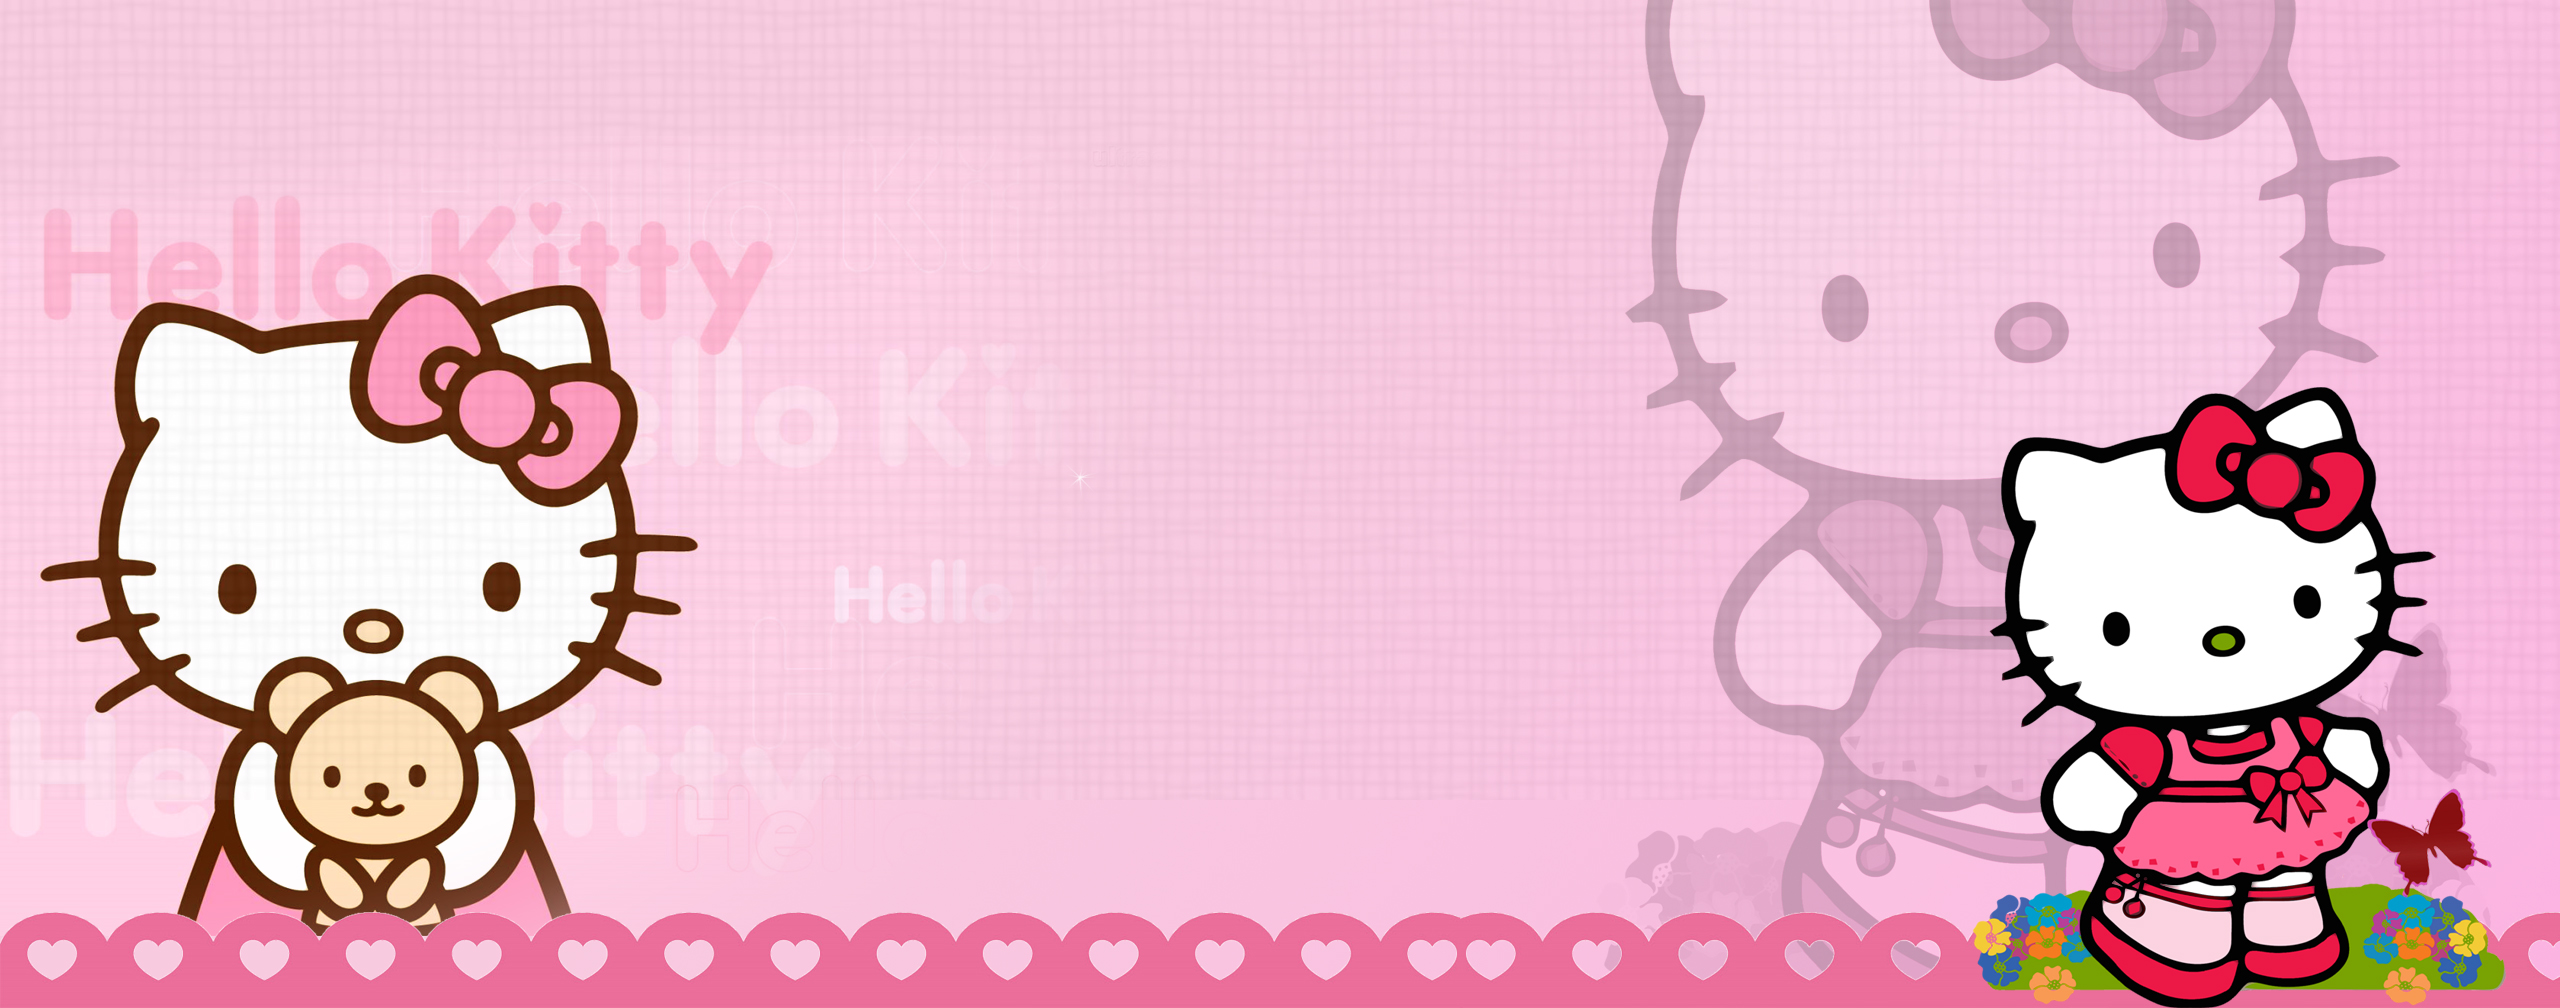 Hello Kitty Dual Monitor Wallp Brh Deviantart HD Wallpaper